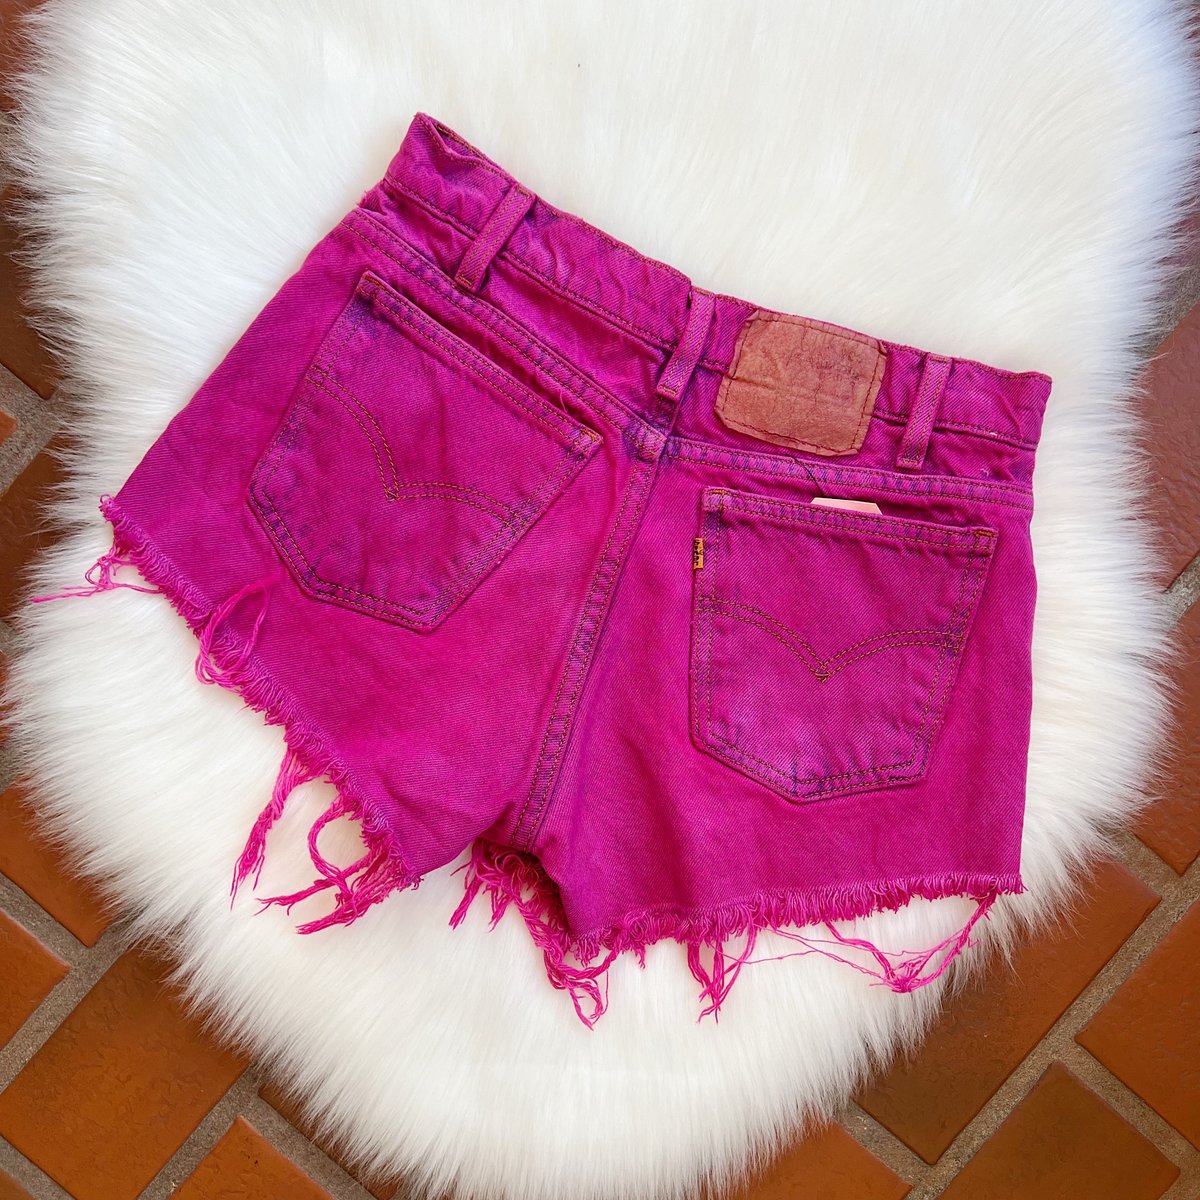 Image of 27/28" waist - Vintage Rare Overdyed Levi 550 Shorts - Key West Embroidered